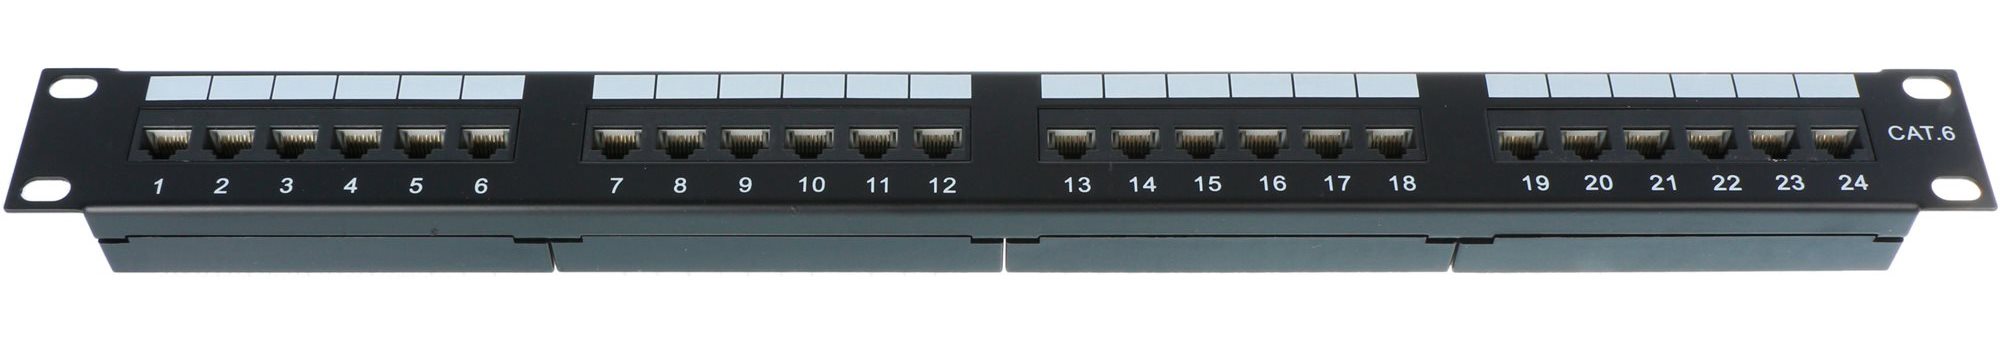 Patch panel Datacom 24x RJ45 Portos